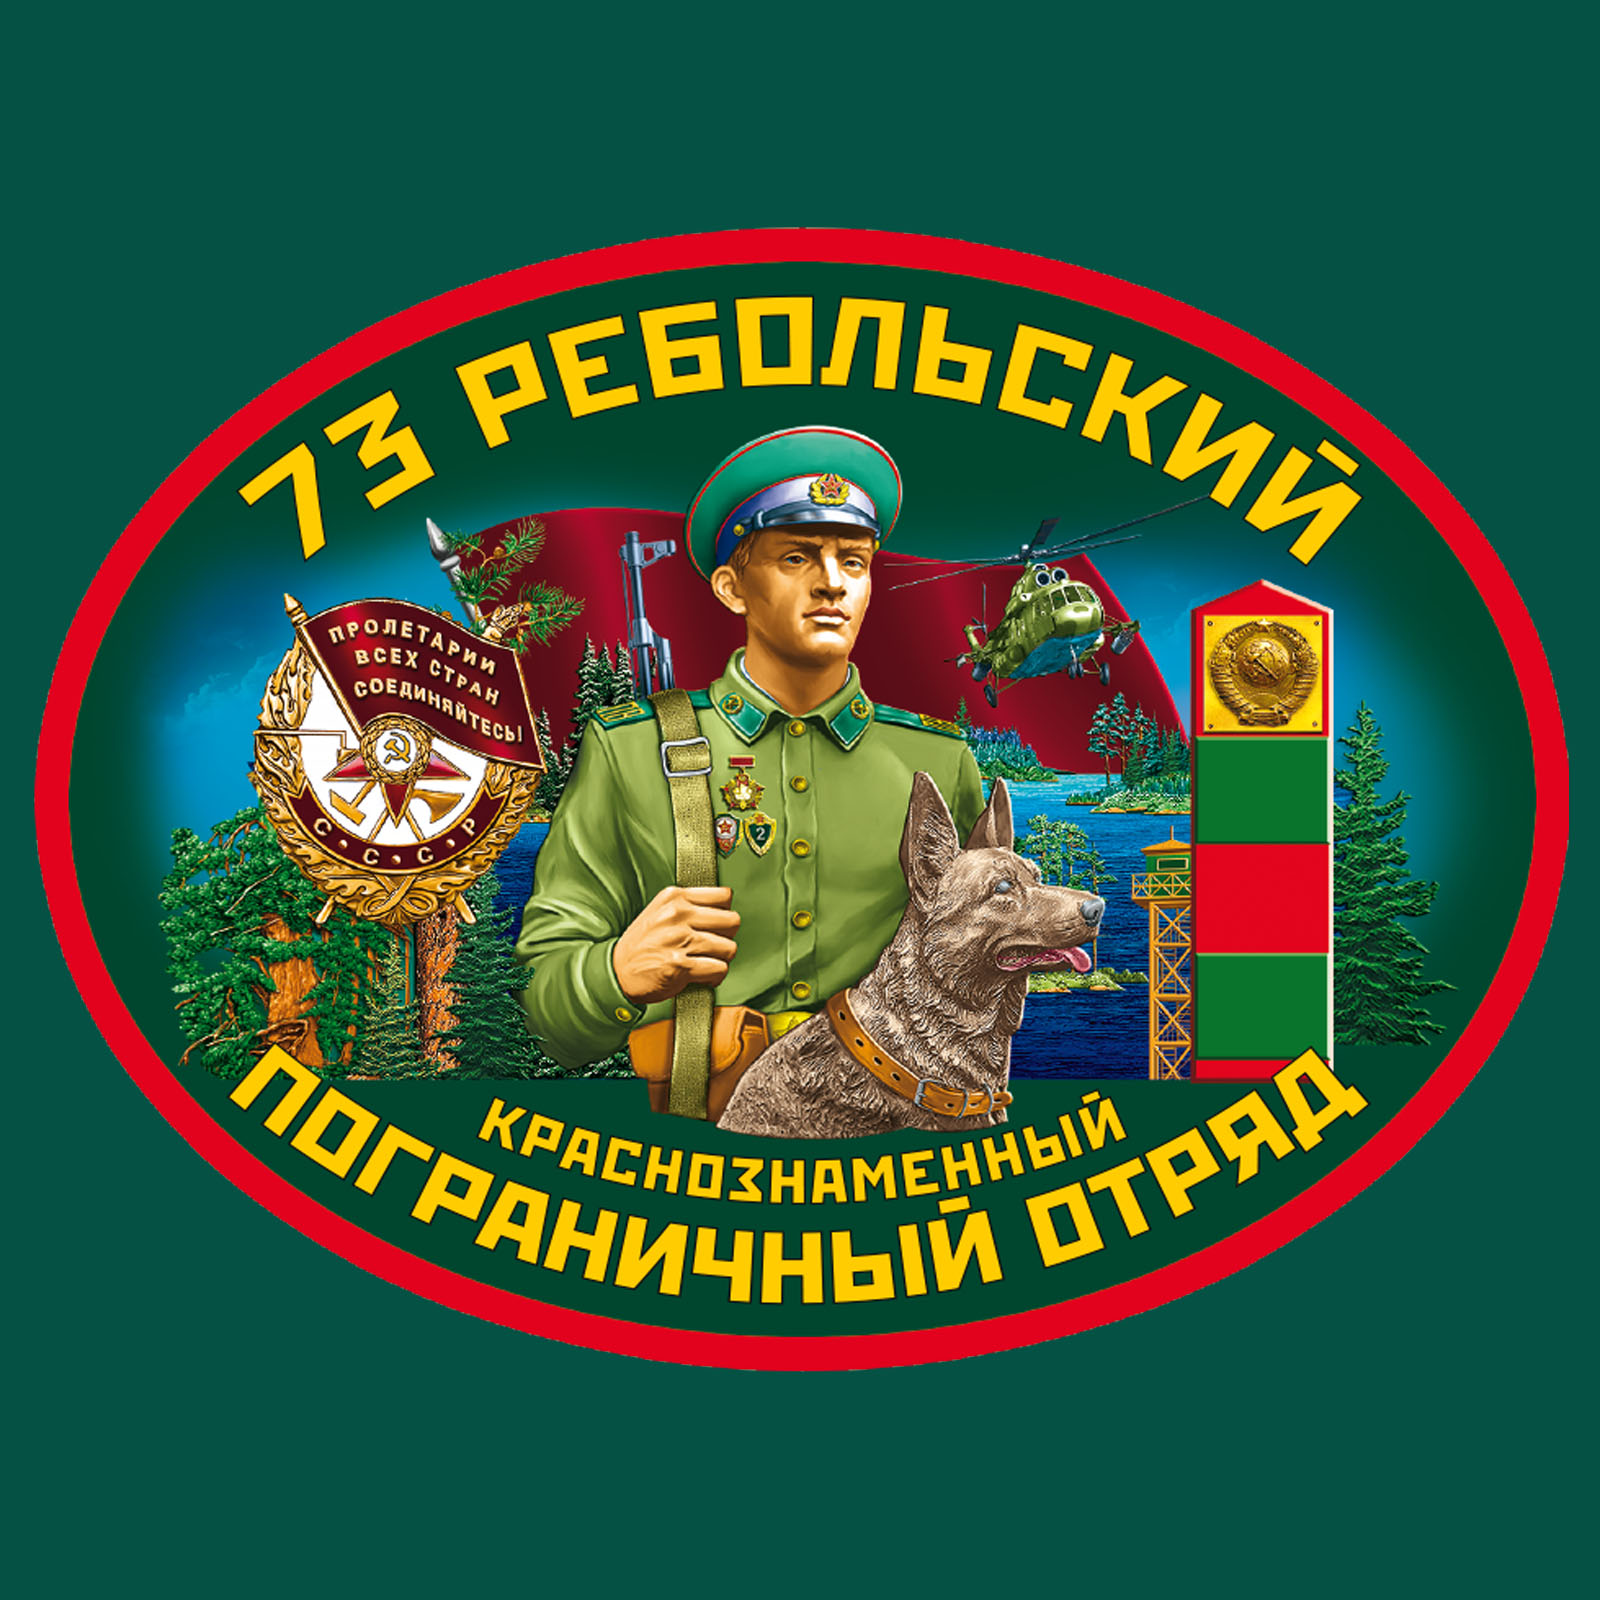 Зелёная футболка "73 Ребольского пограничного отряда" 